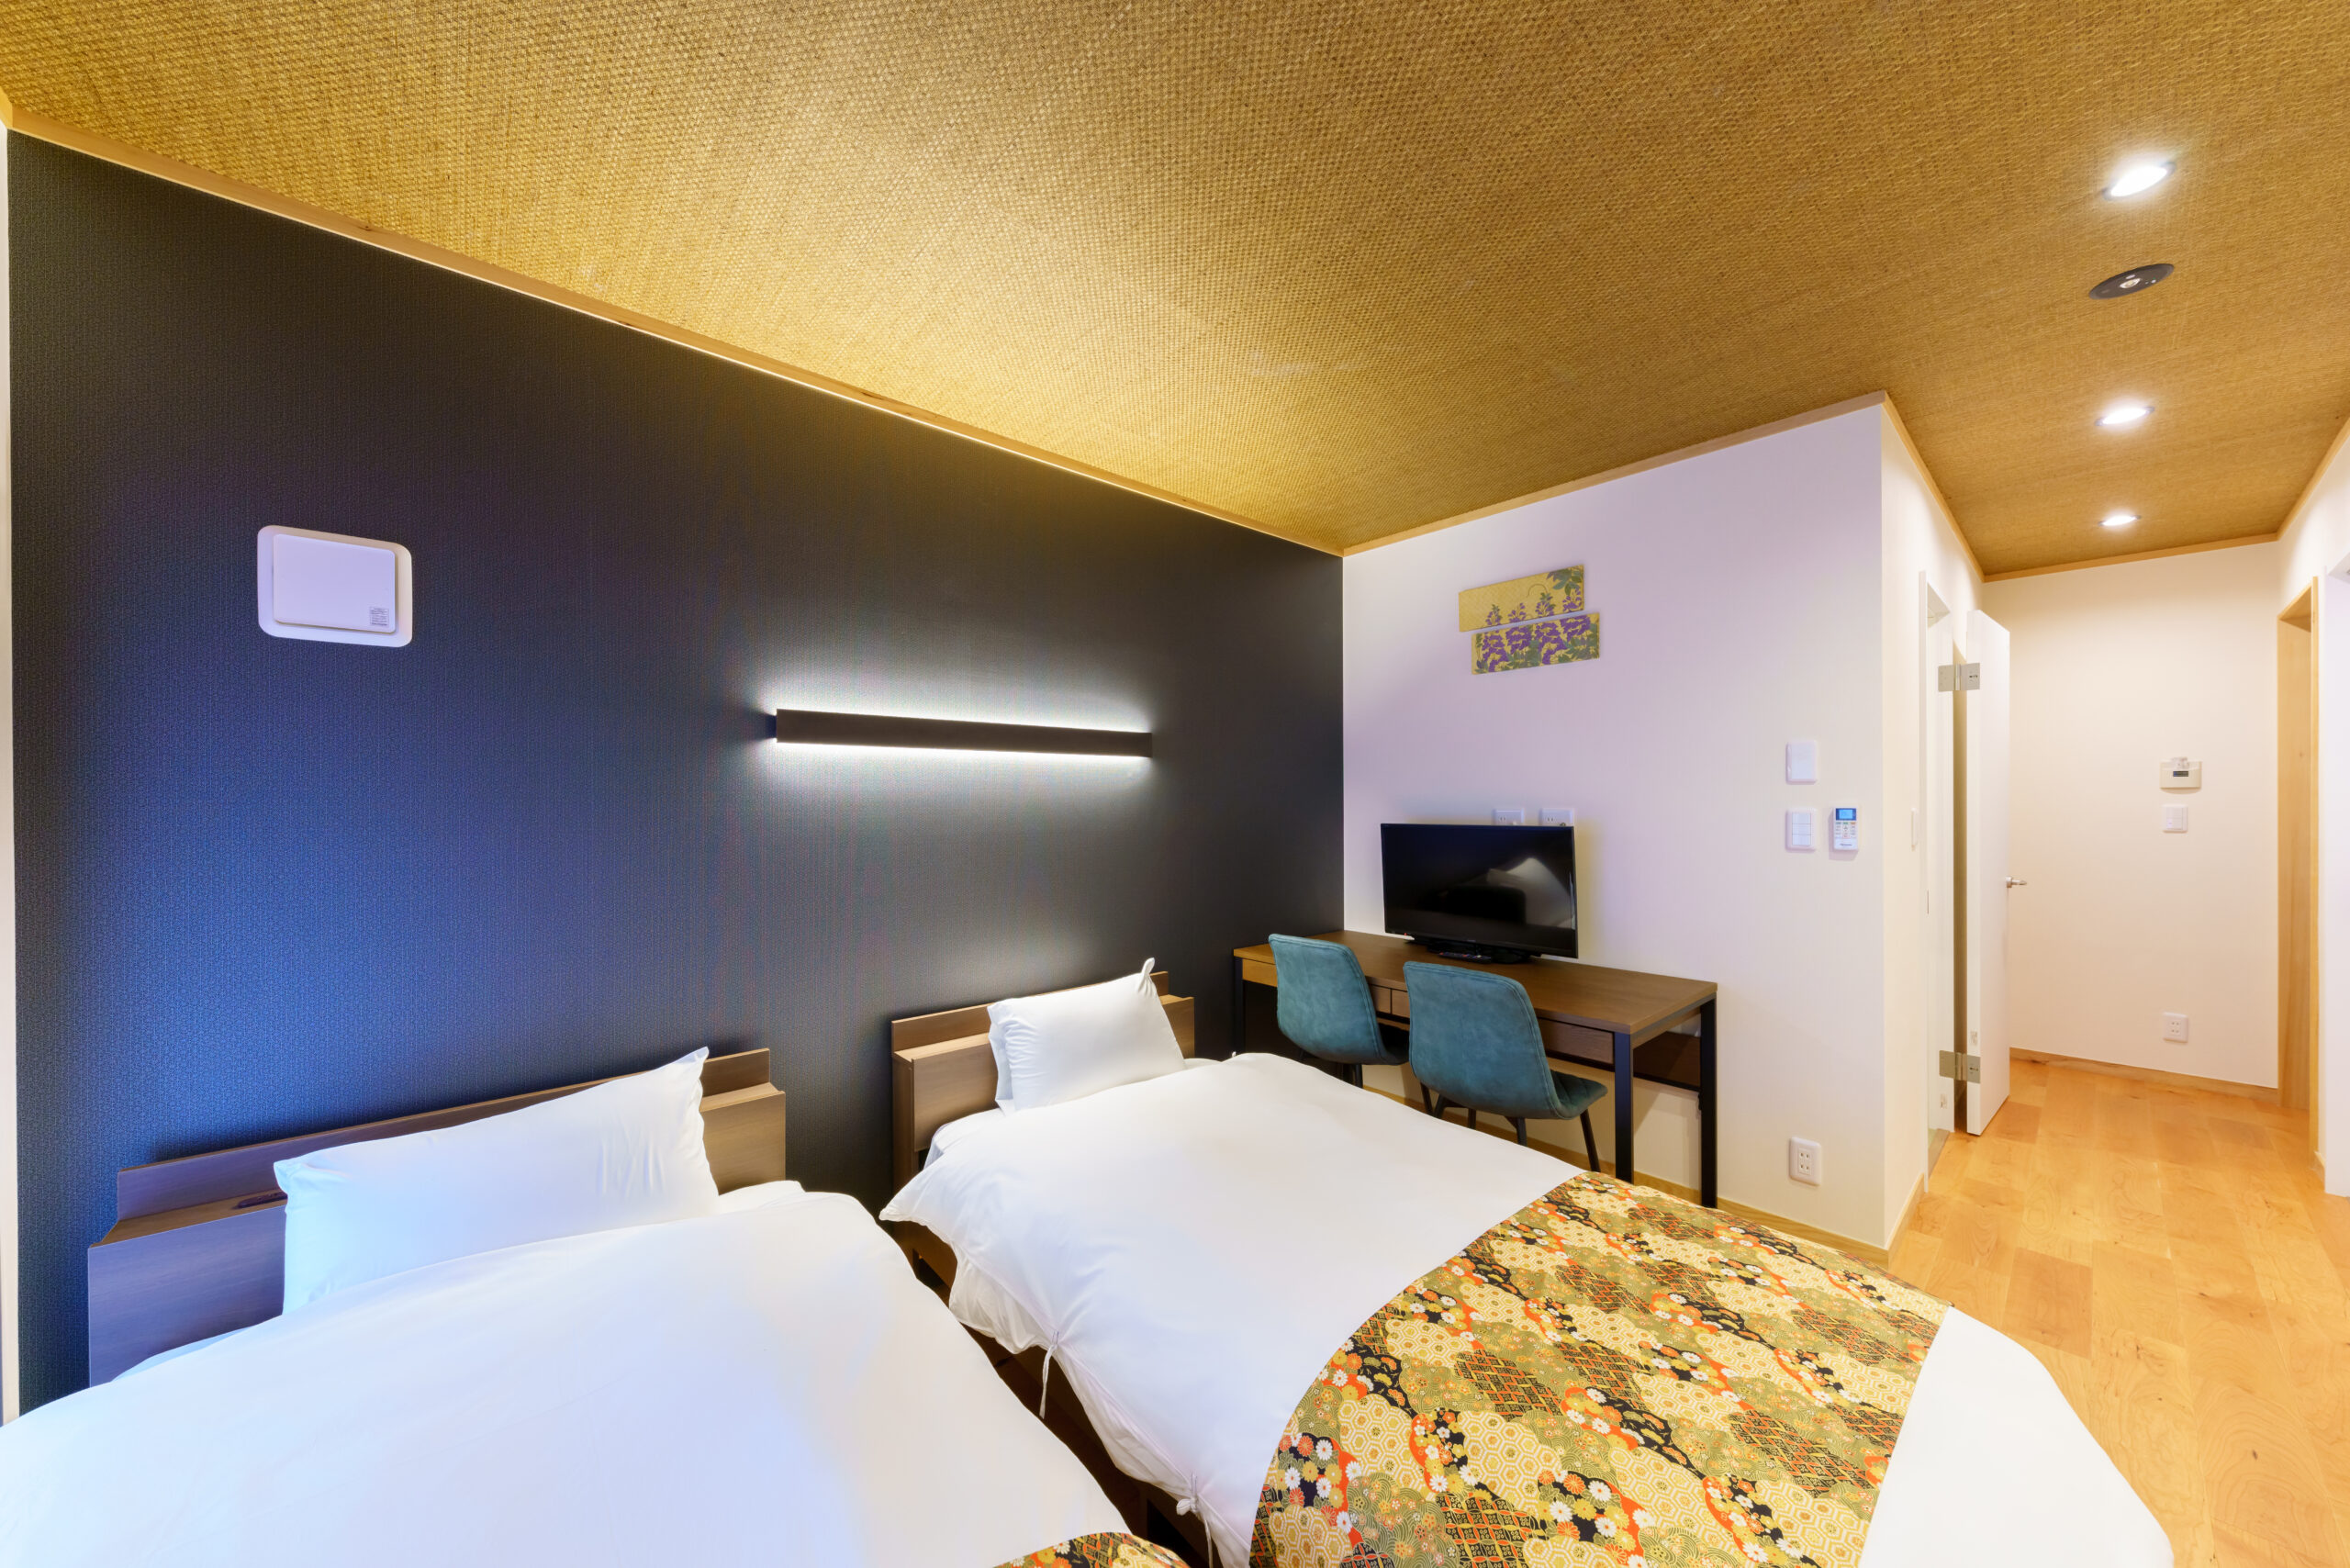 台東区浅草にある宿家すずめホテルの客室寝室画像